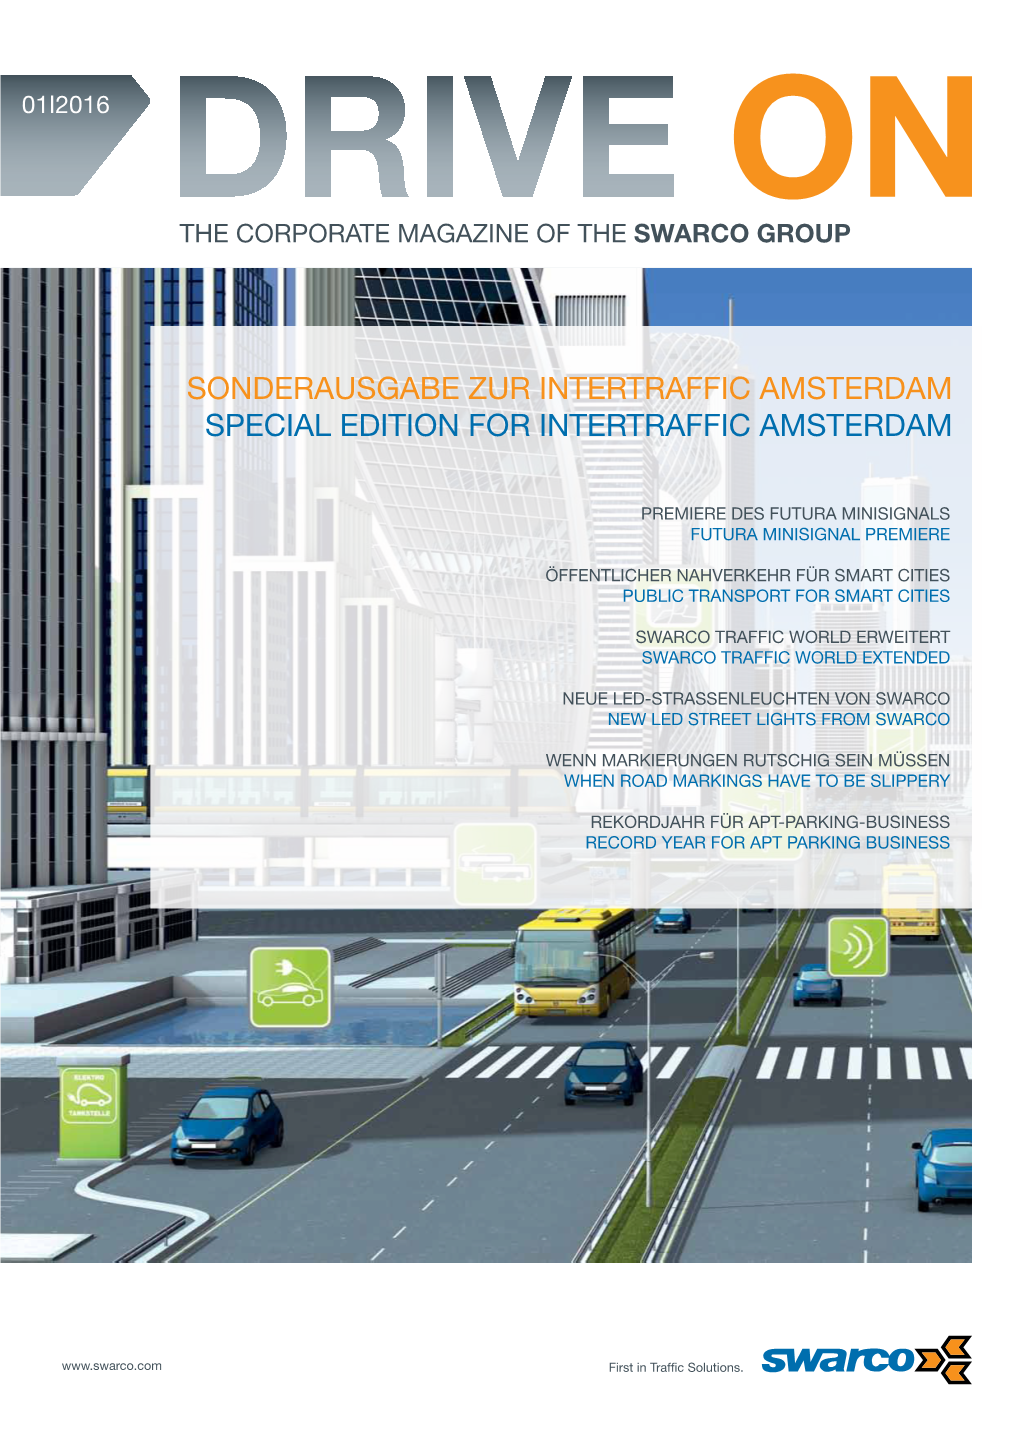 Sonderausgabe Zur Intertraffic Amsterdam Special Edition for Intertraffic Amsterdam